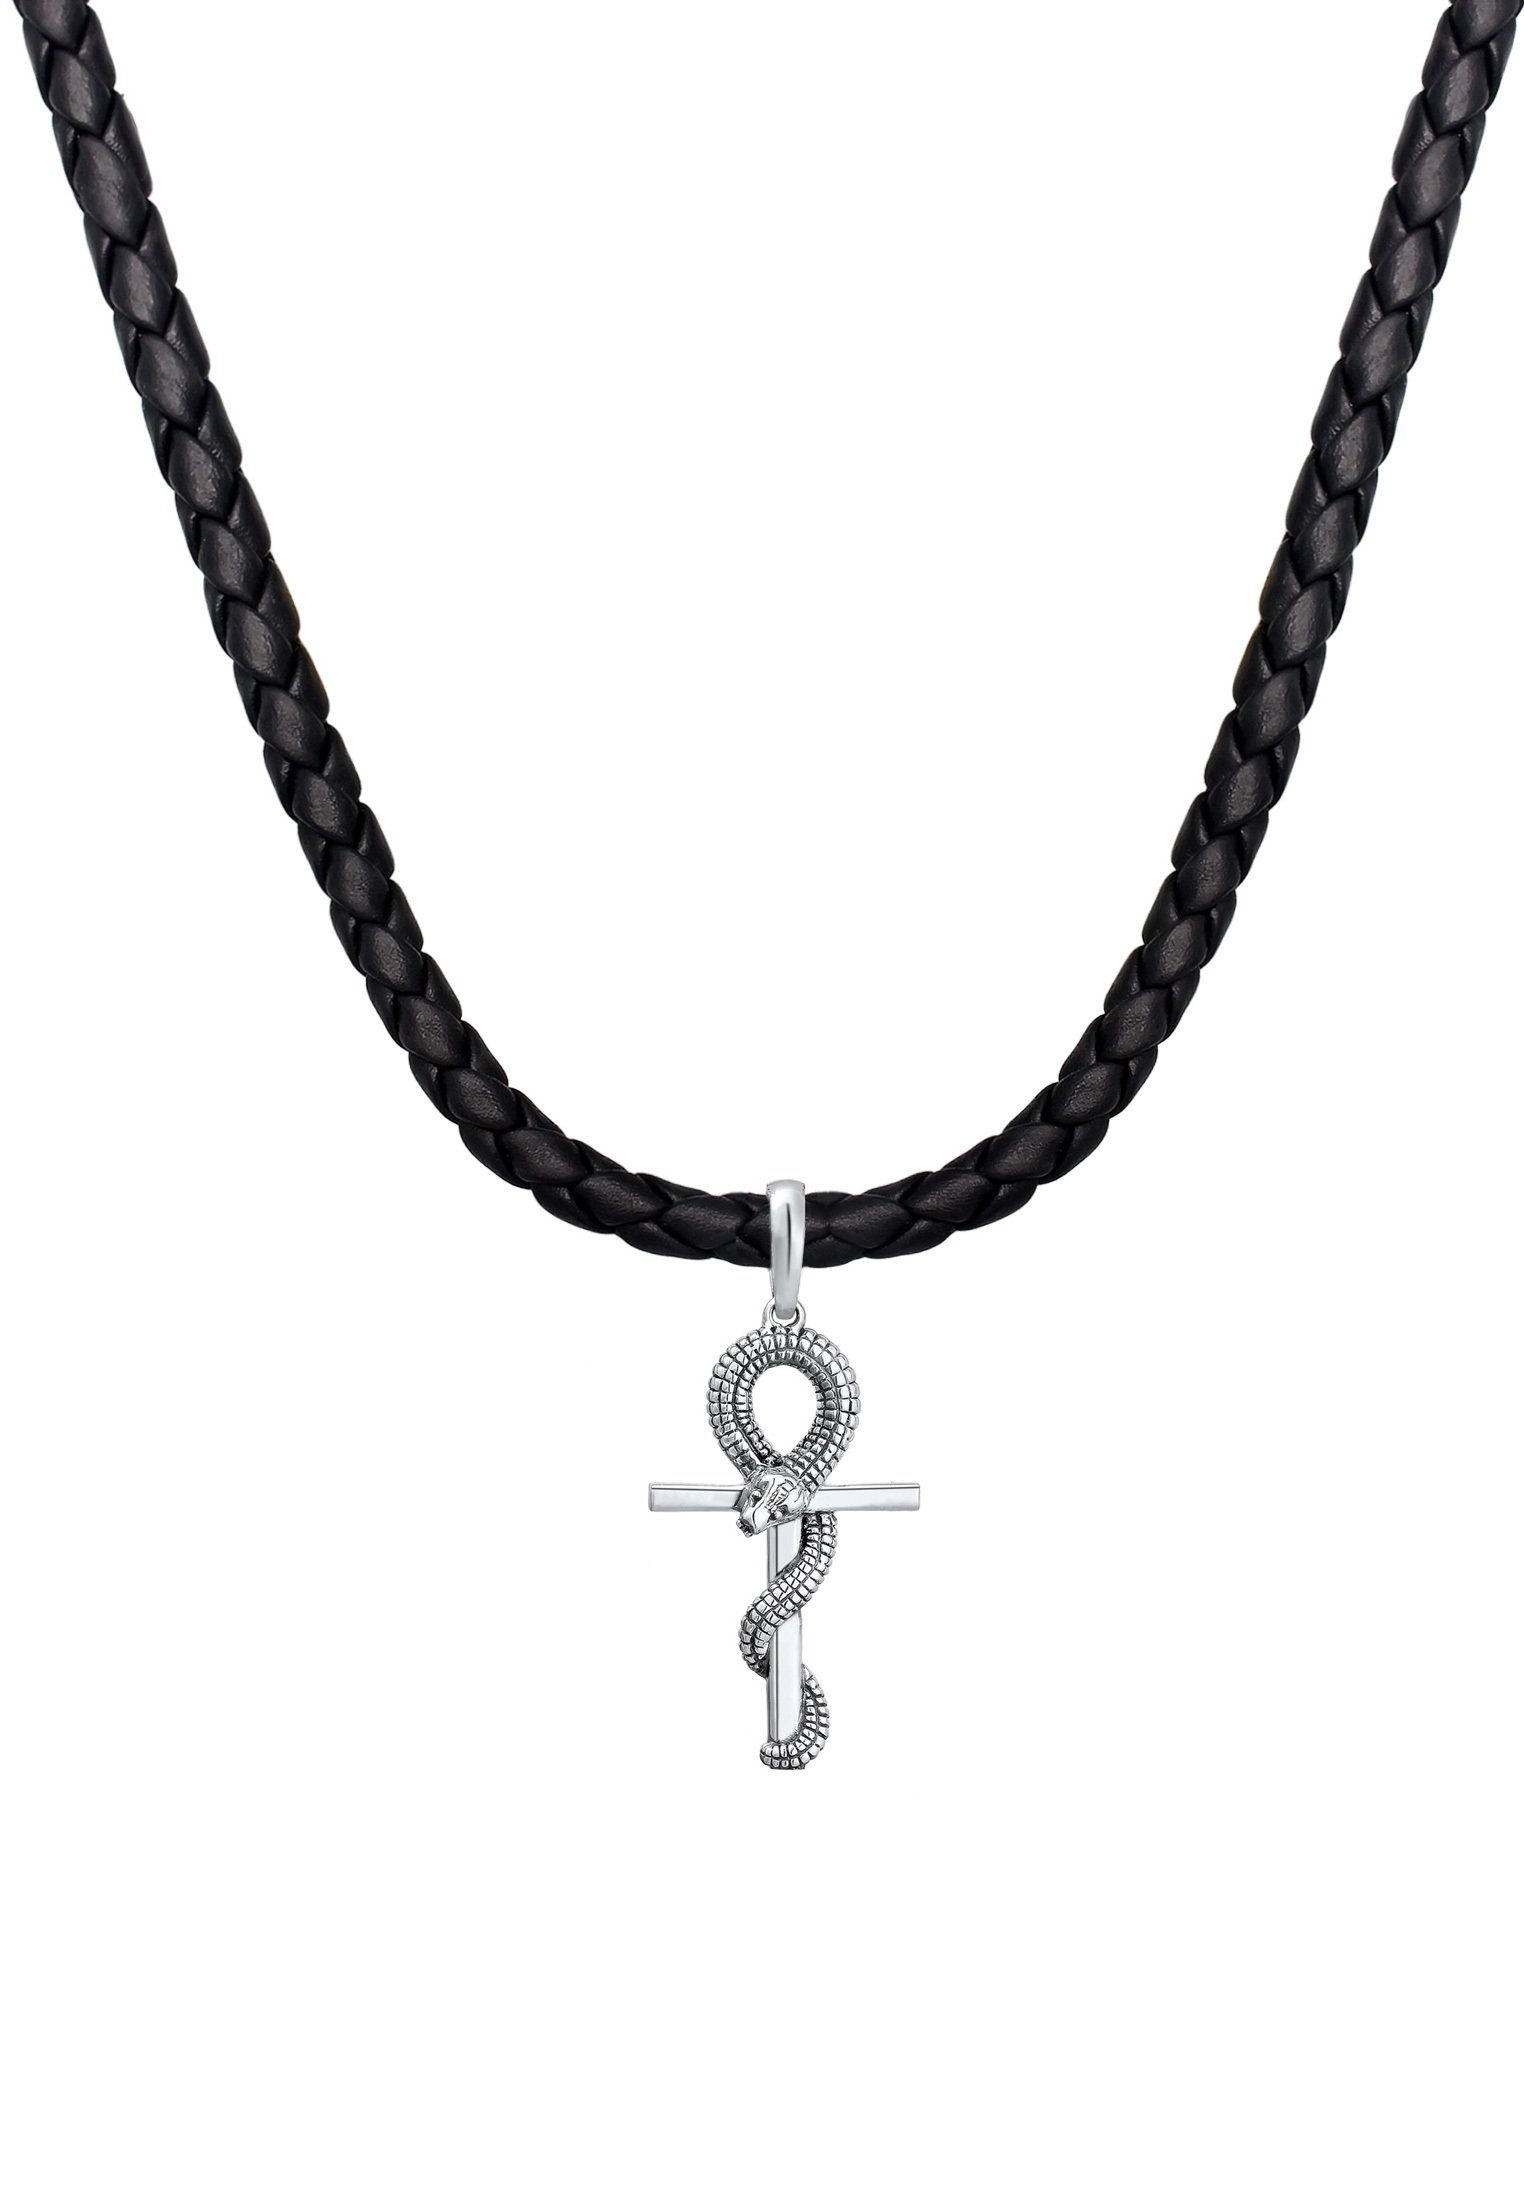 Kuzzoi Kette mit Anhänger Herren Kreuz Schlange Leder Oxidiert 925 Silber,  In sehr hochwertiger Juwelier-Qualität gefertigt